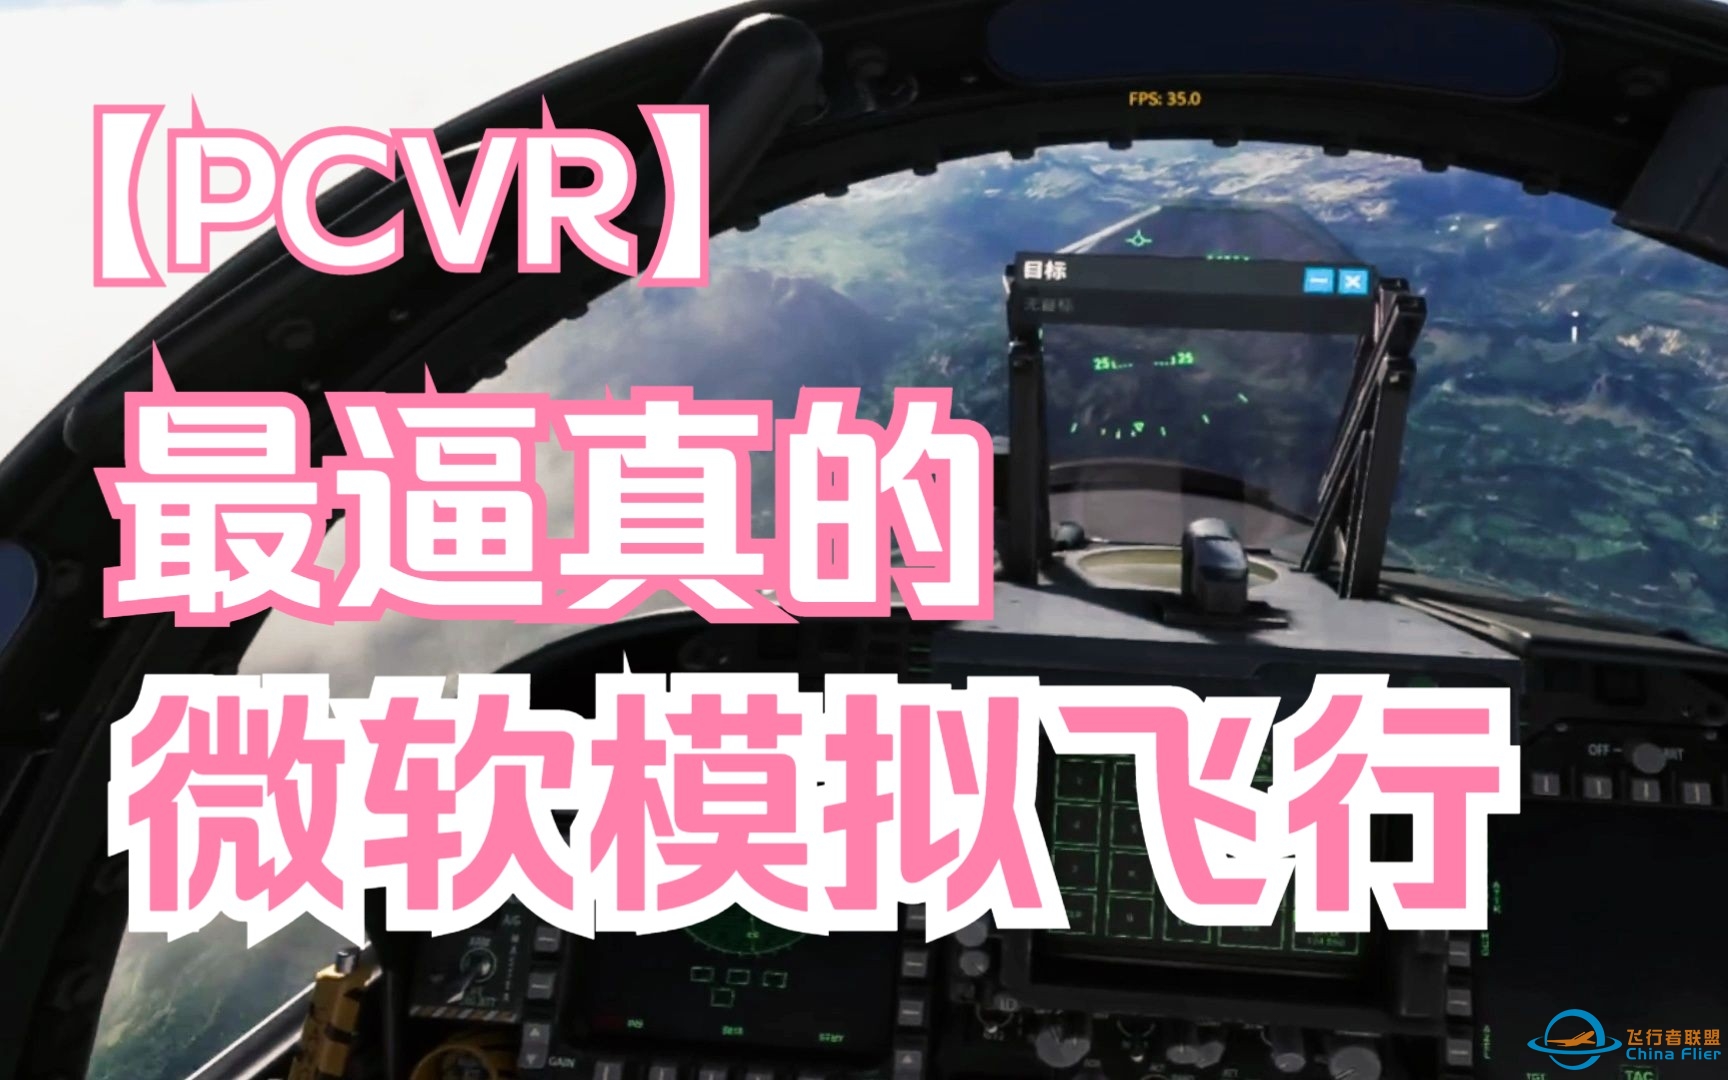 最逼真的Pcvr游戏-微软飞行模拟VR模式-5697 